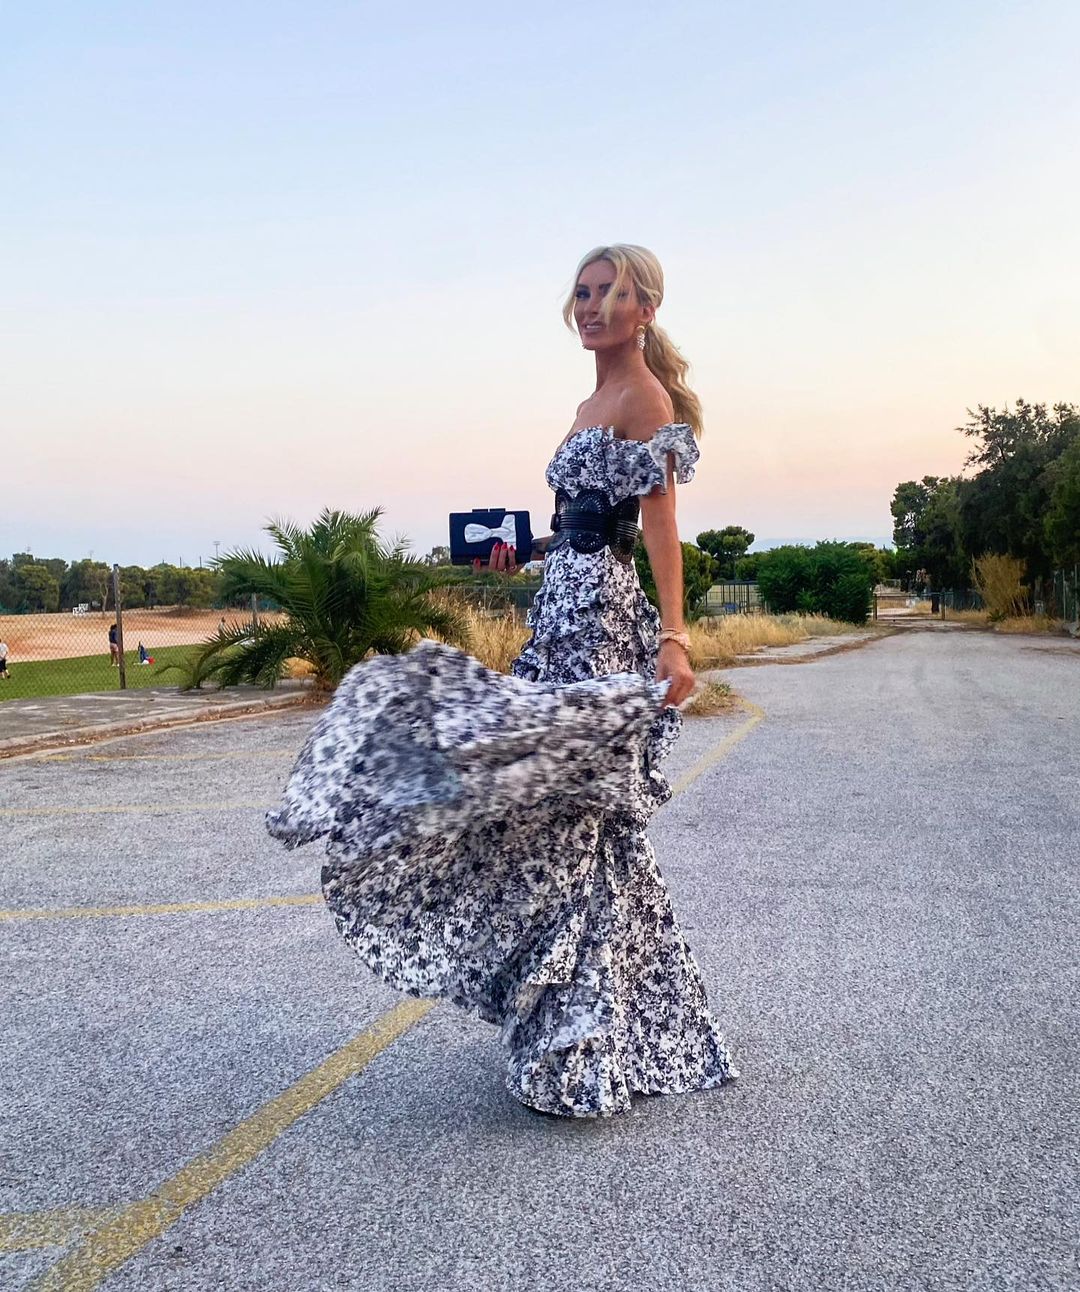 Κατερίνα Καινούργιου: Καλεσμένη σε γάμο με φανταστικό φόρεμα! (εικόνες)